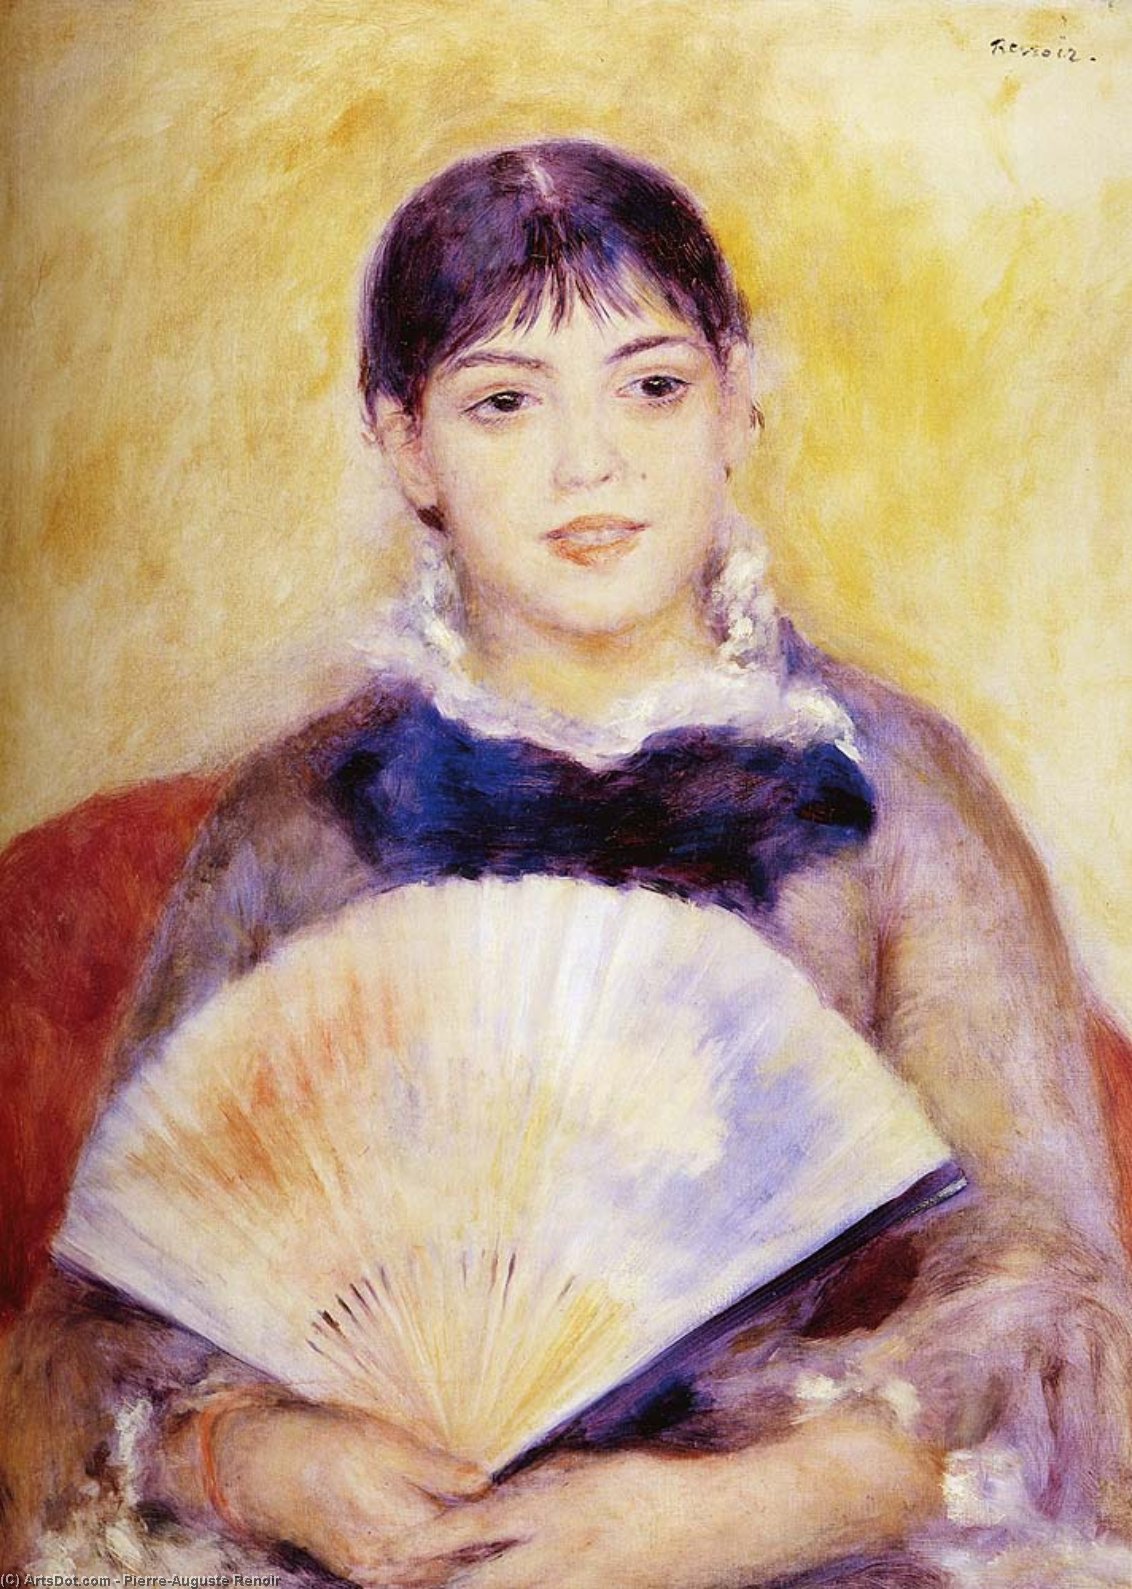 WikiOO.org - Encyclopedia of Fine Arts - Malba, Artwork Pierre-Auguste Renoir - Girl With A fan